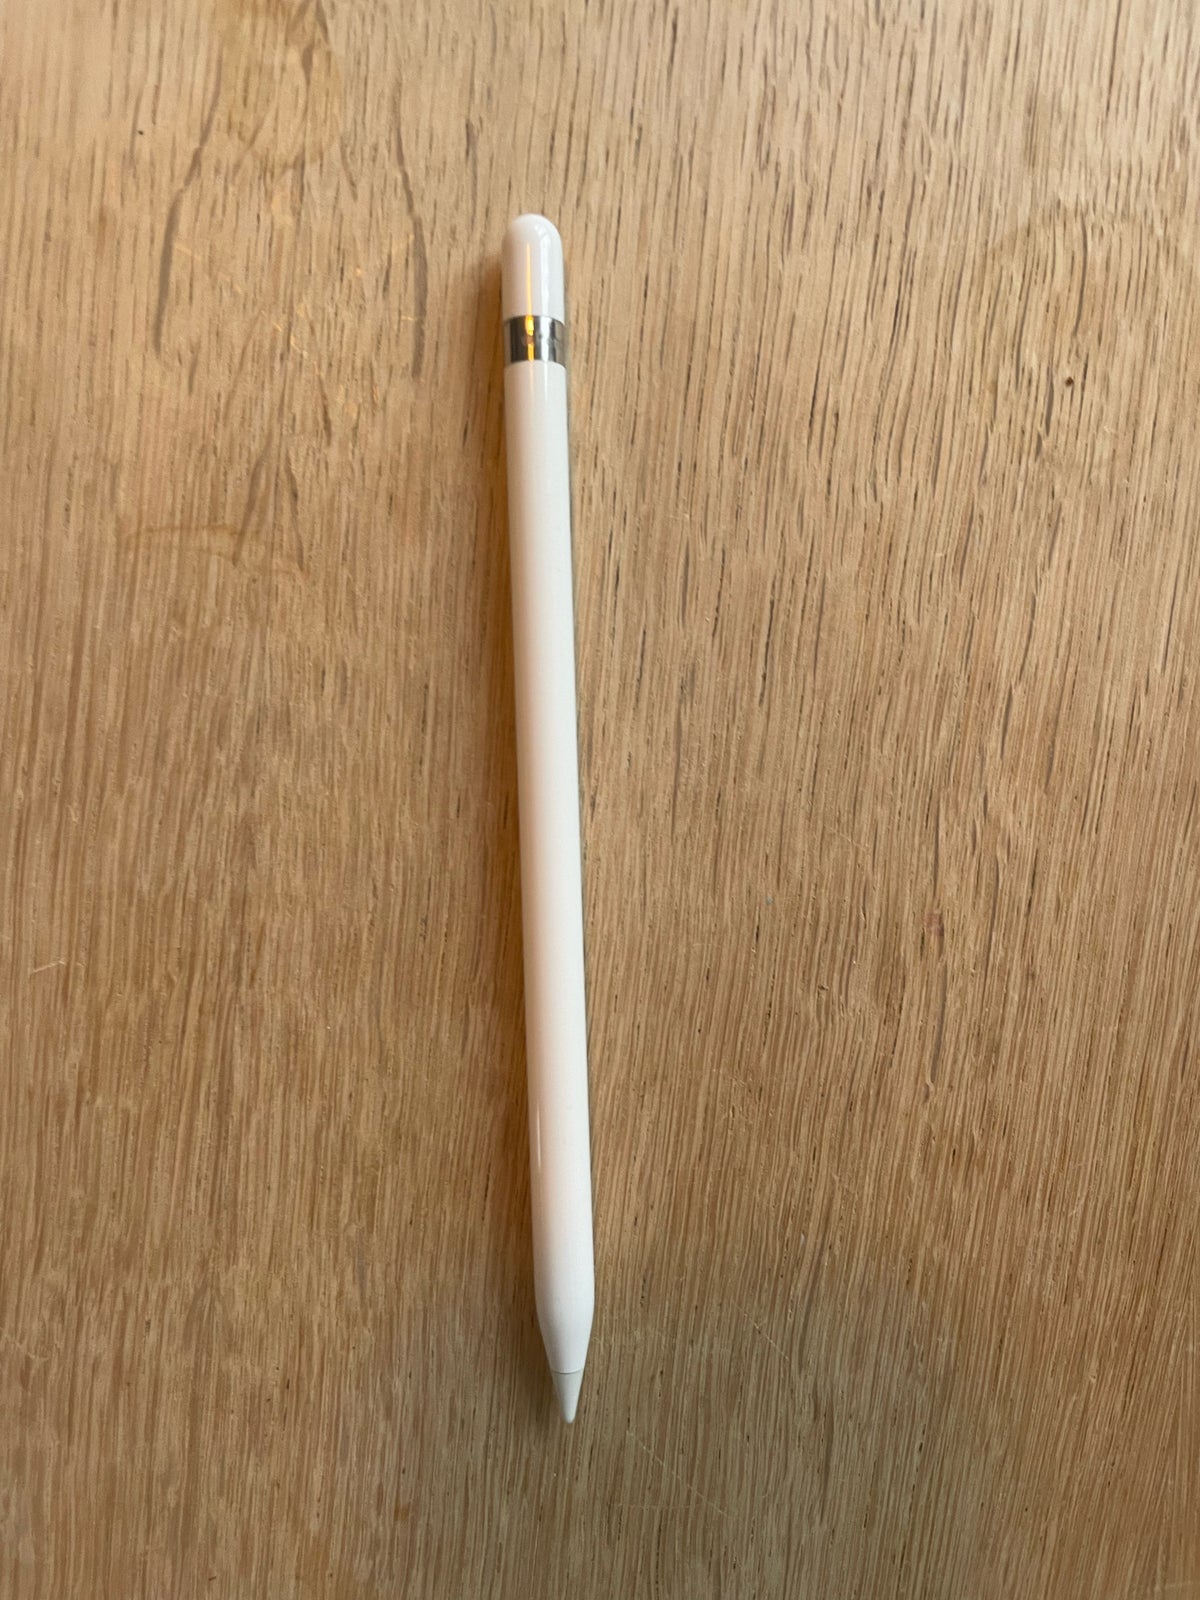 Stylus pen, t. iPad, Perfekt